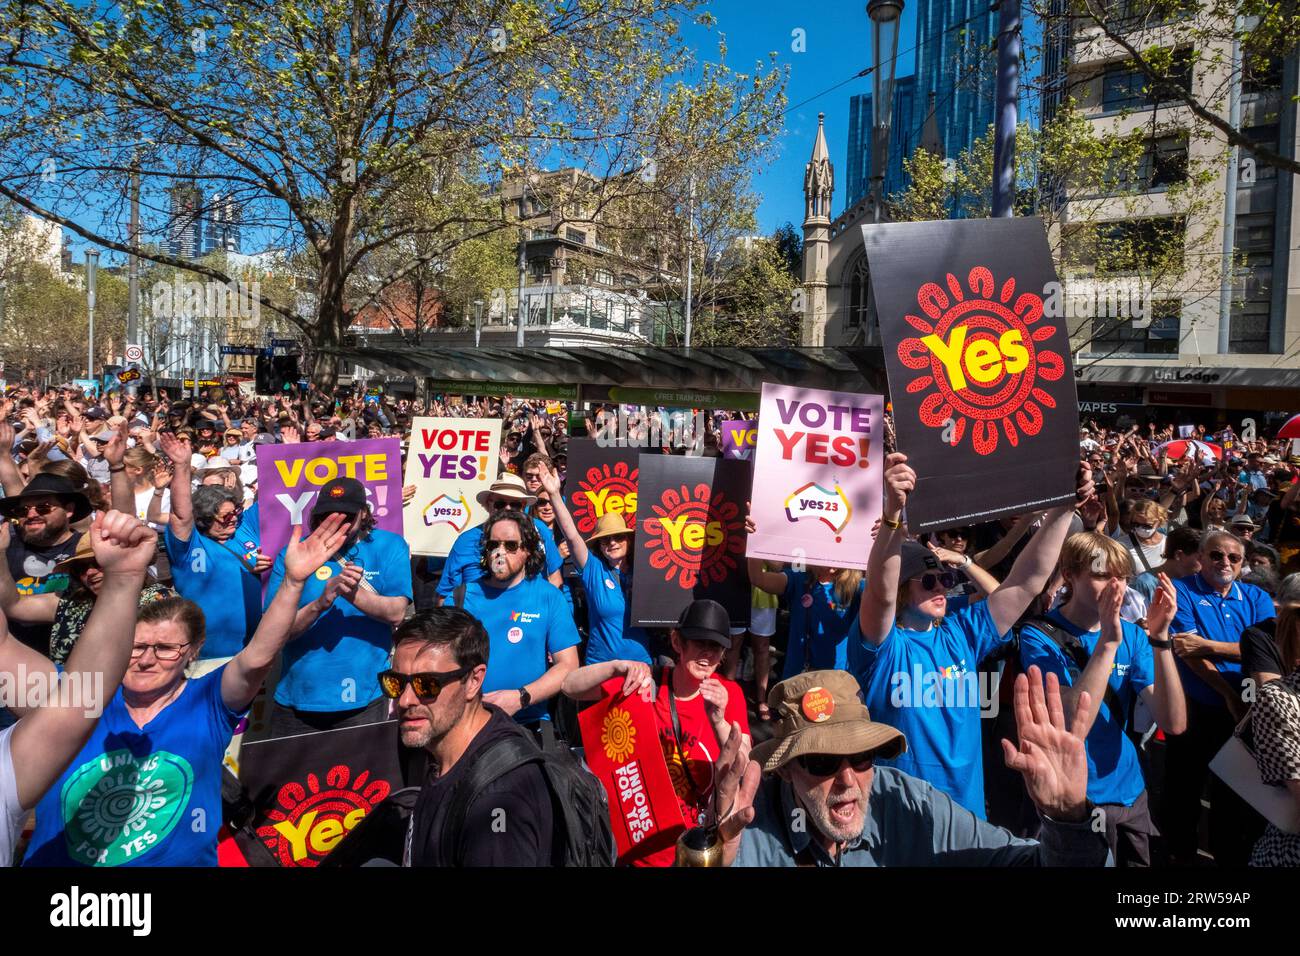 Les manifestants soutiennent la campagne du Oui lors du référendum australien reconnaissant les Australiens indigènes dans la constitution. Melbourne, Victoria, Australie Banque D'Images